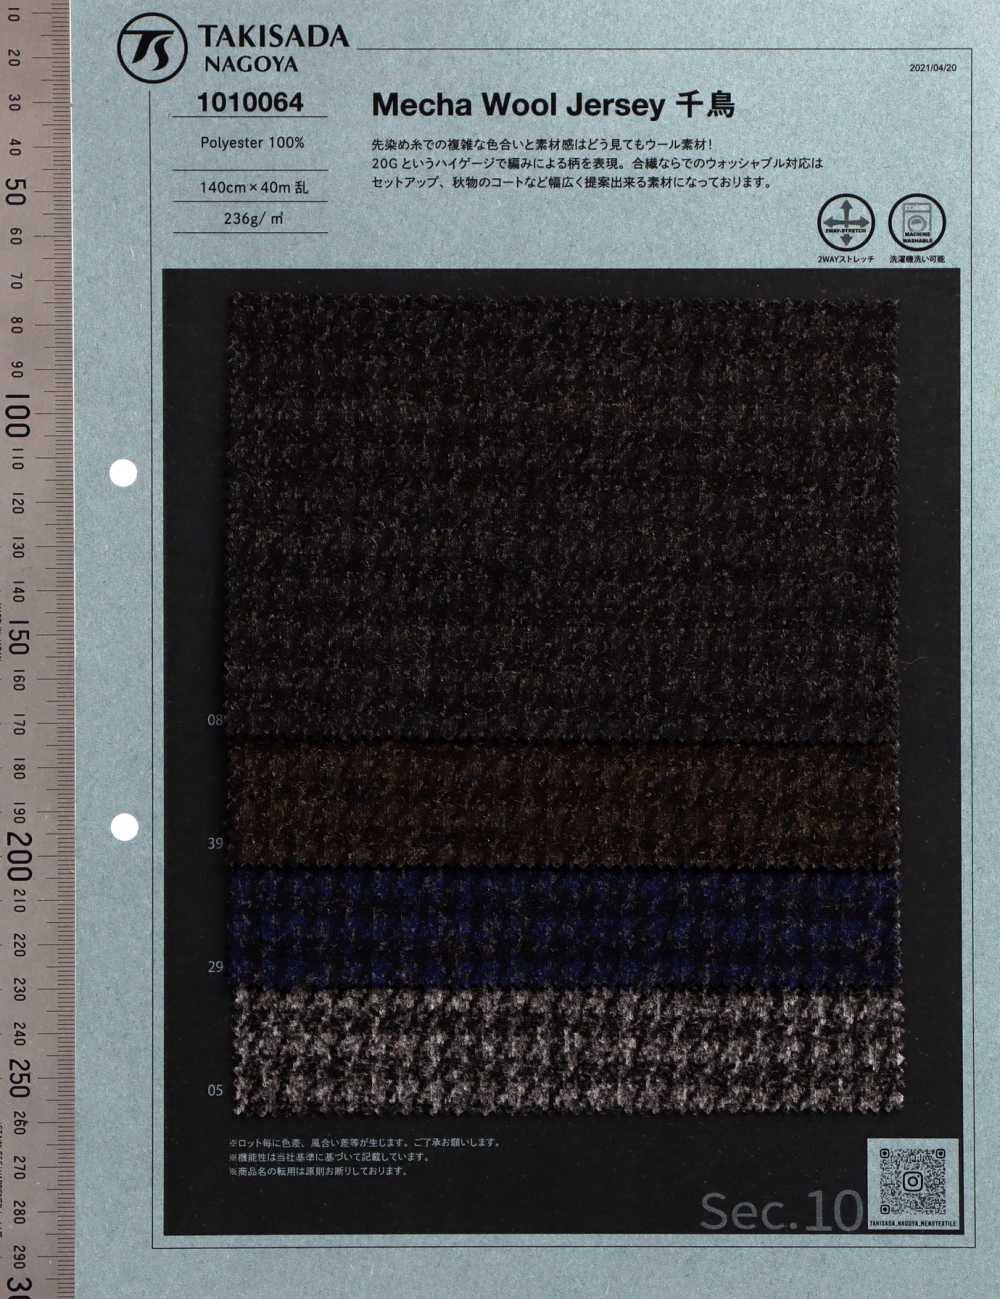 1010064 Tricot En Tissu Semblable à De La Laine Pied-de-poule[Fabrication De Textile] Takisada Nagoya